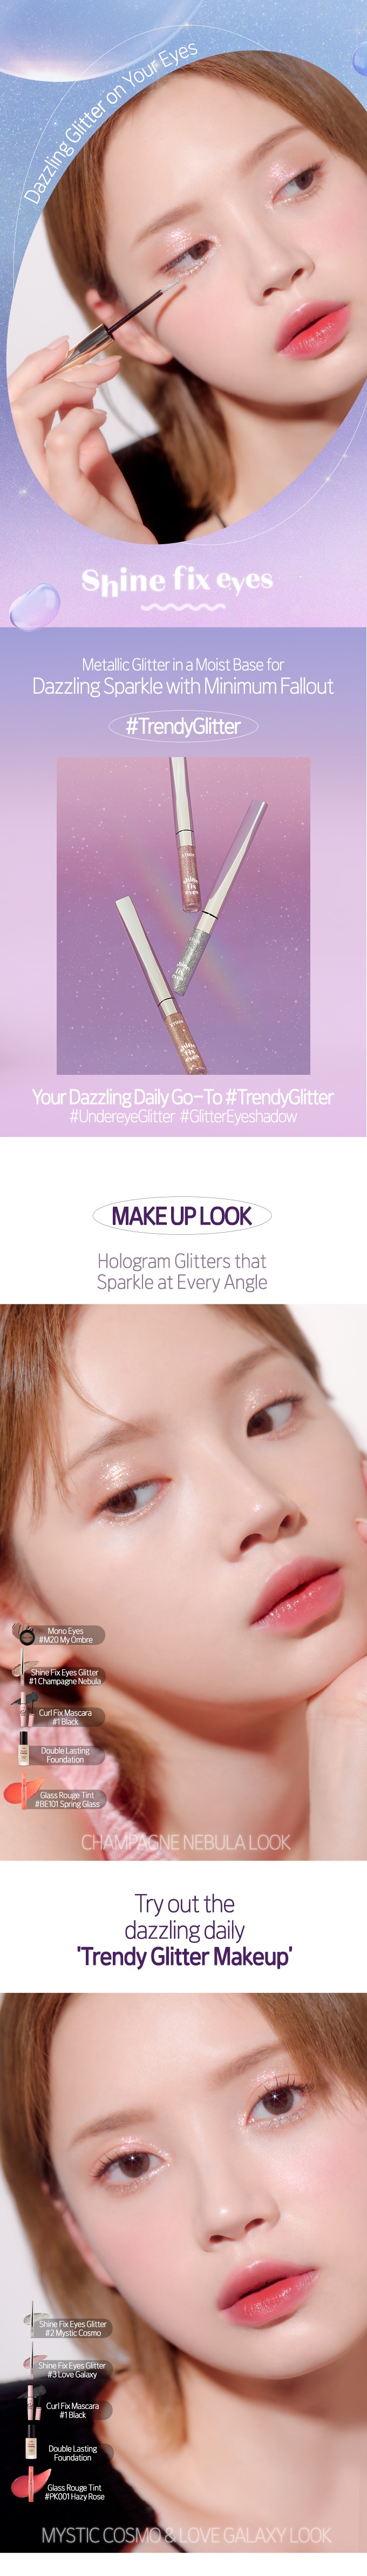 Etude House Shine Fix Eyes Glitter korean skincare product online shop malaysia china india1